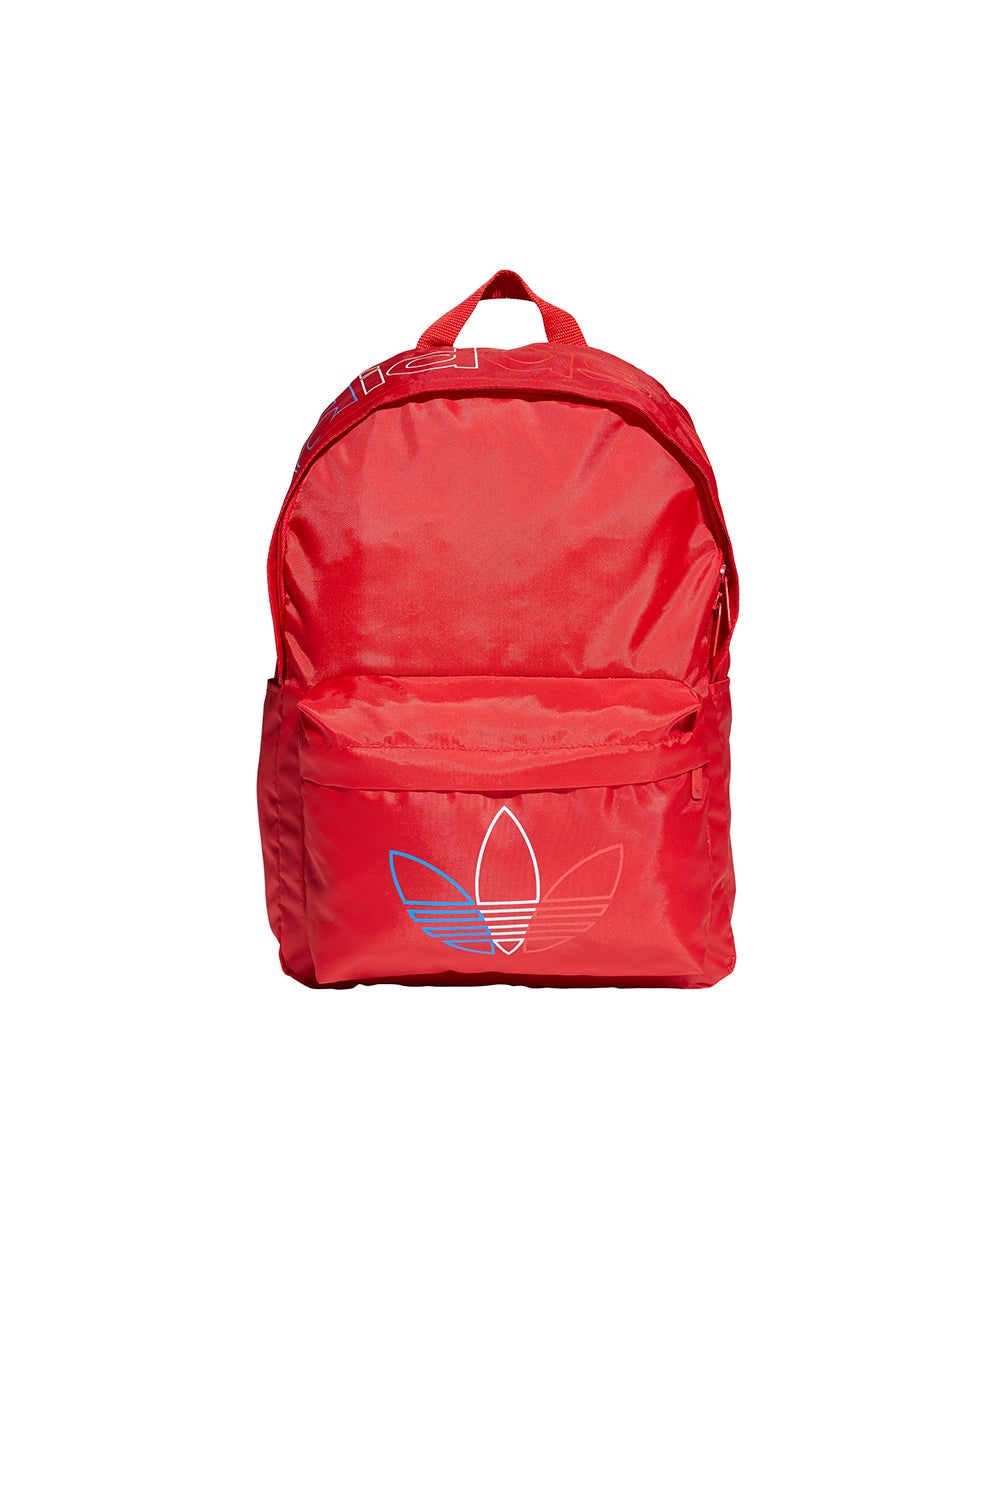 adidas Prime Blue Backpack Scarlet